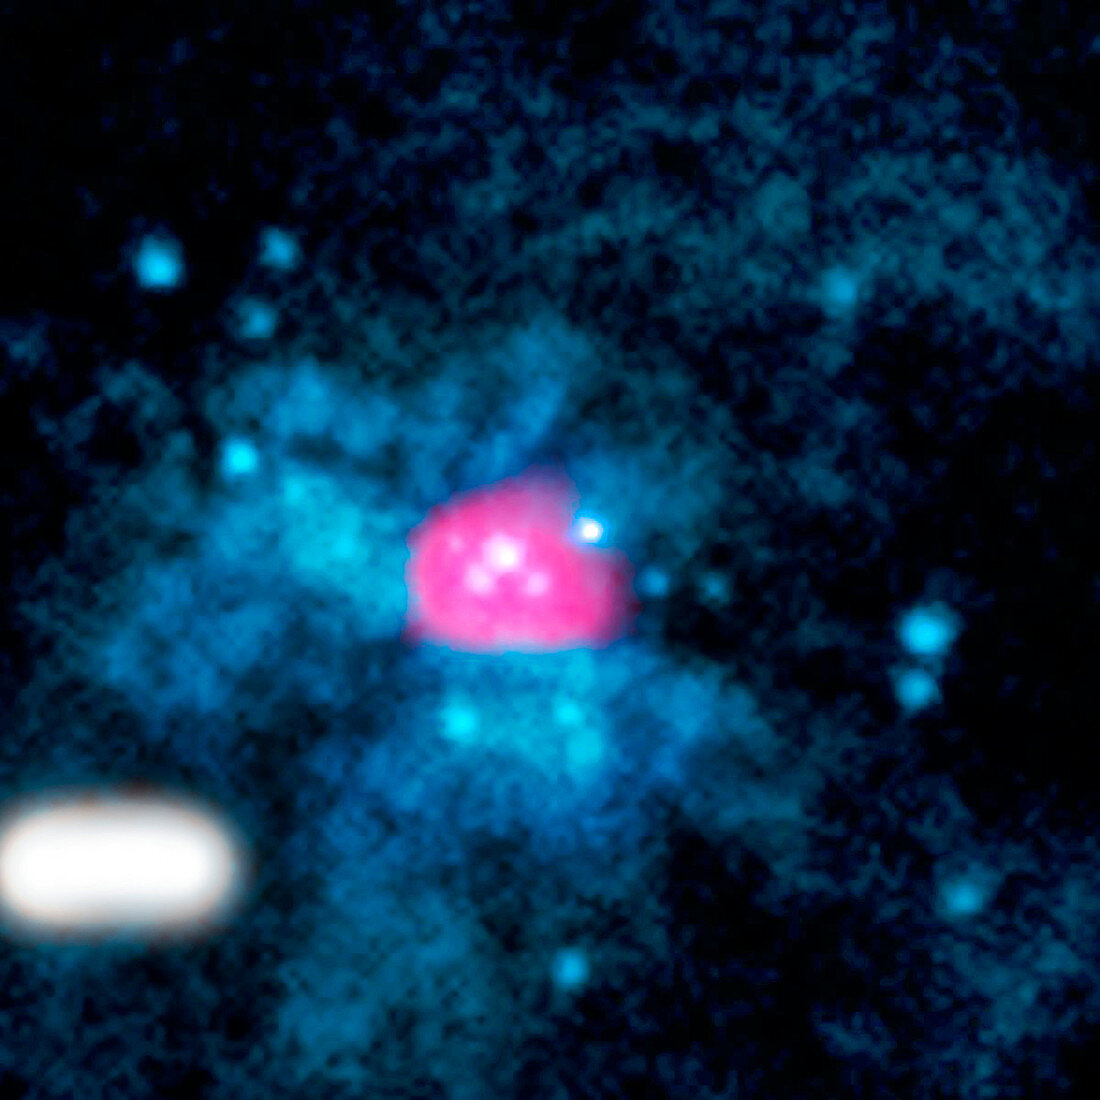 Pulsar in M82, composite image